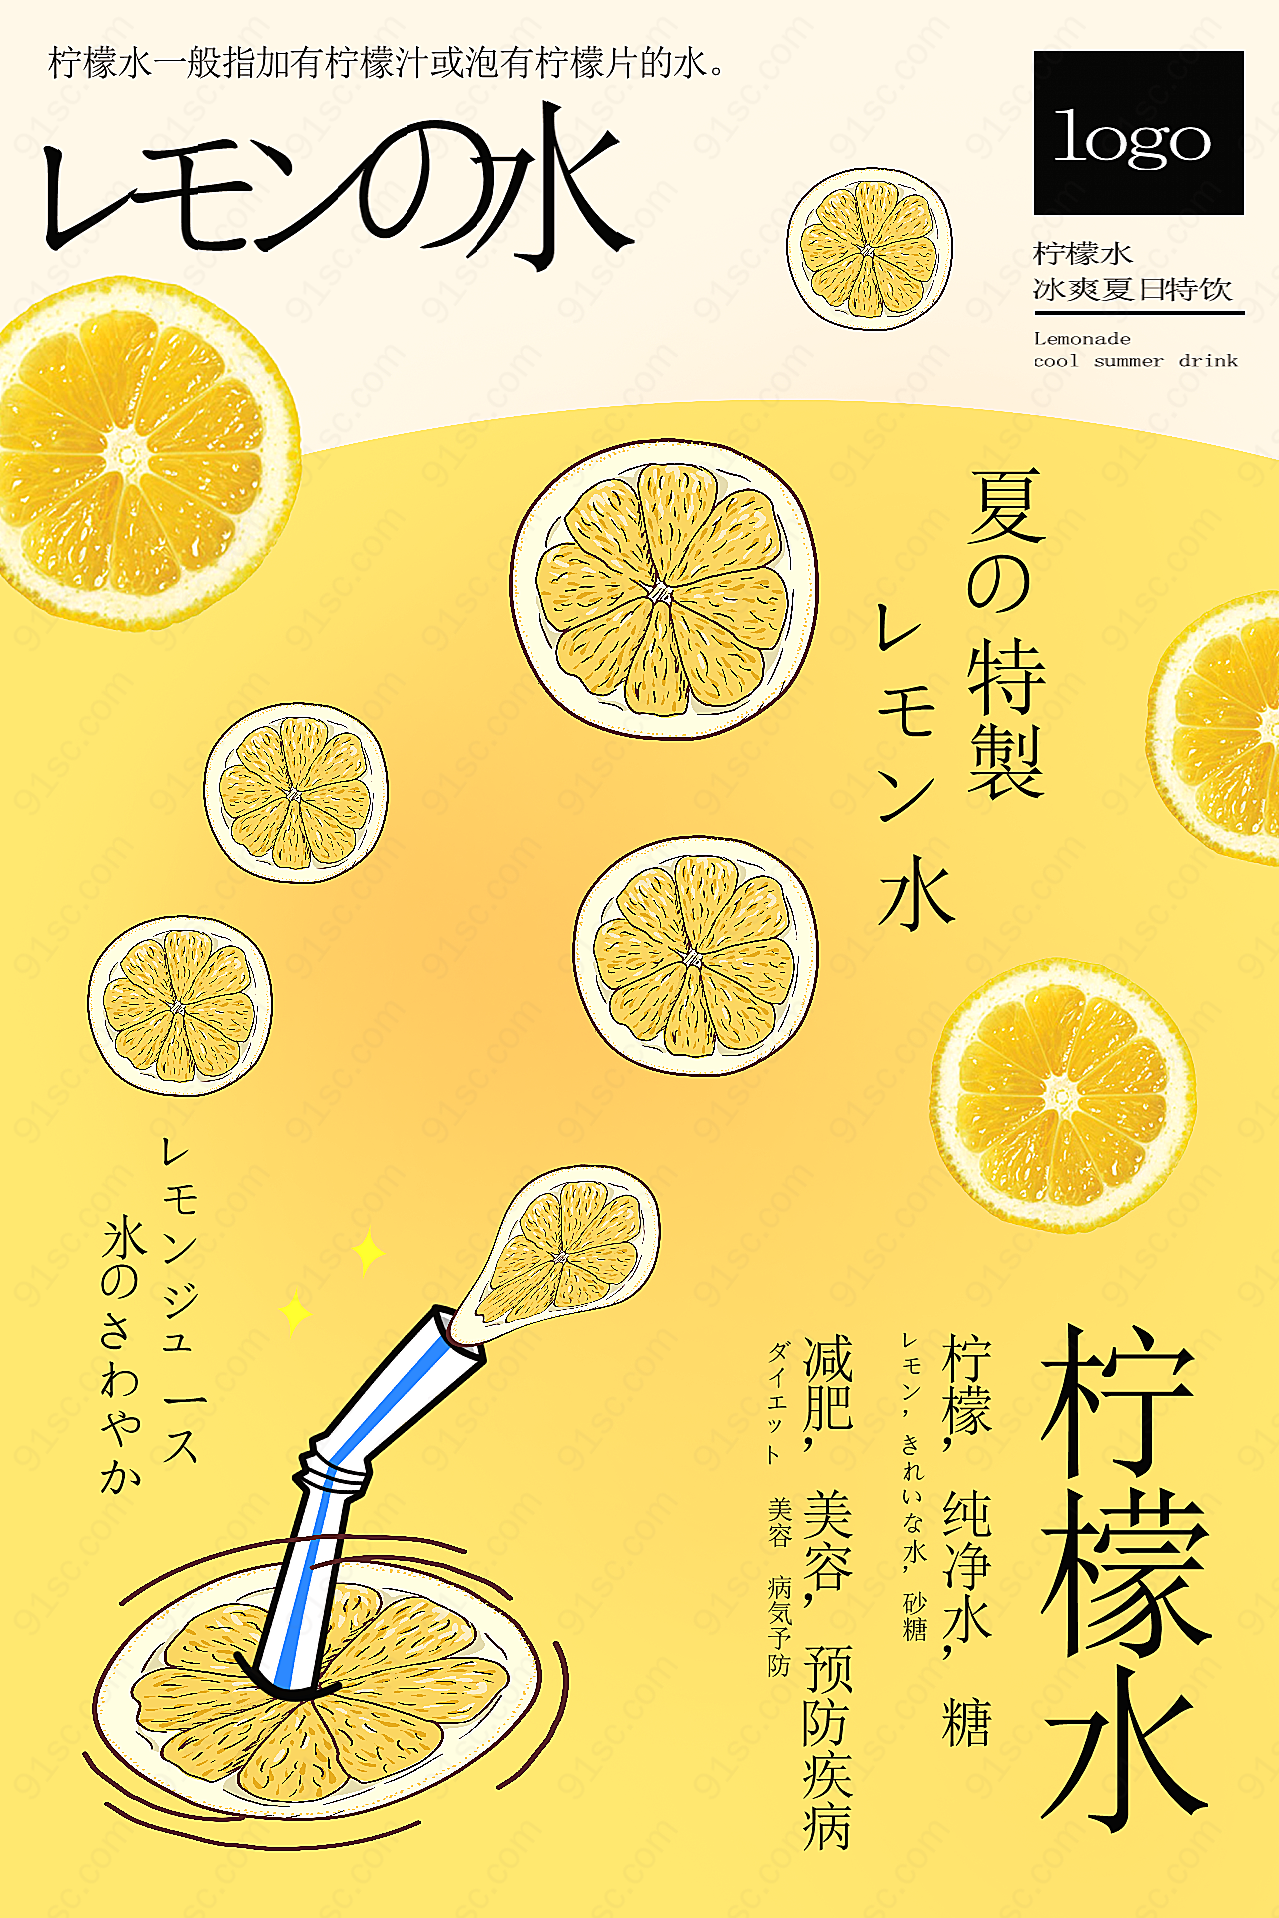 柠檬水摄影高清平面广告